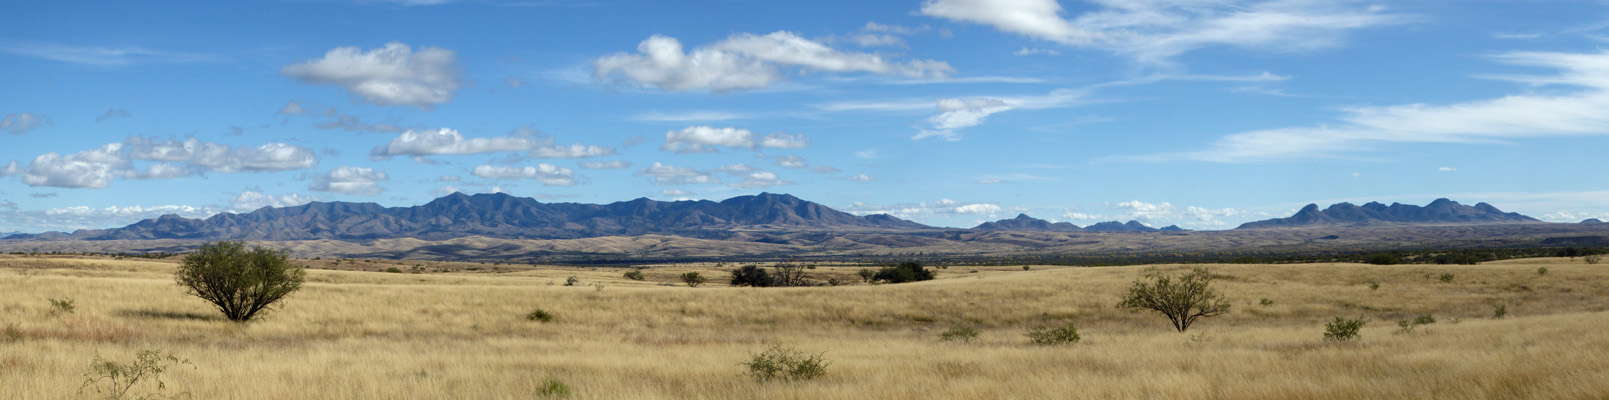 Las Cienegas Conservation Area